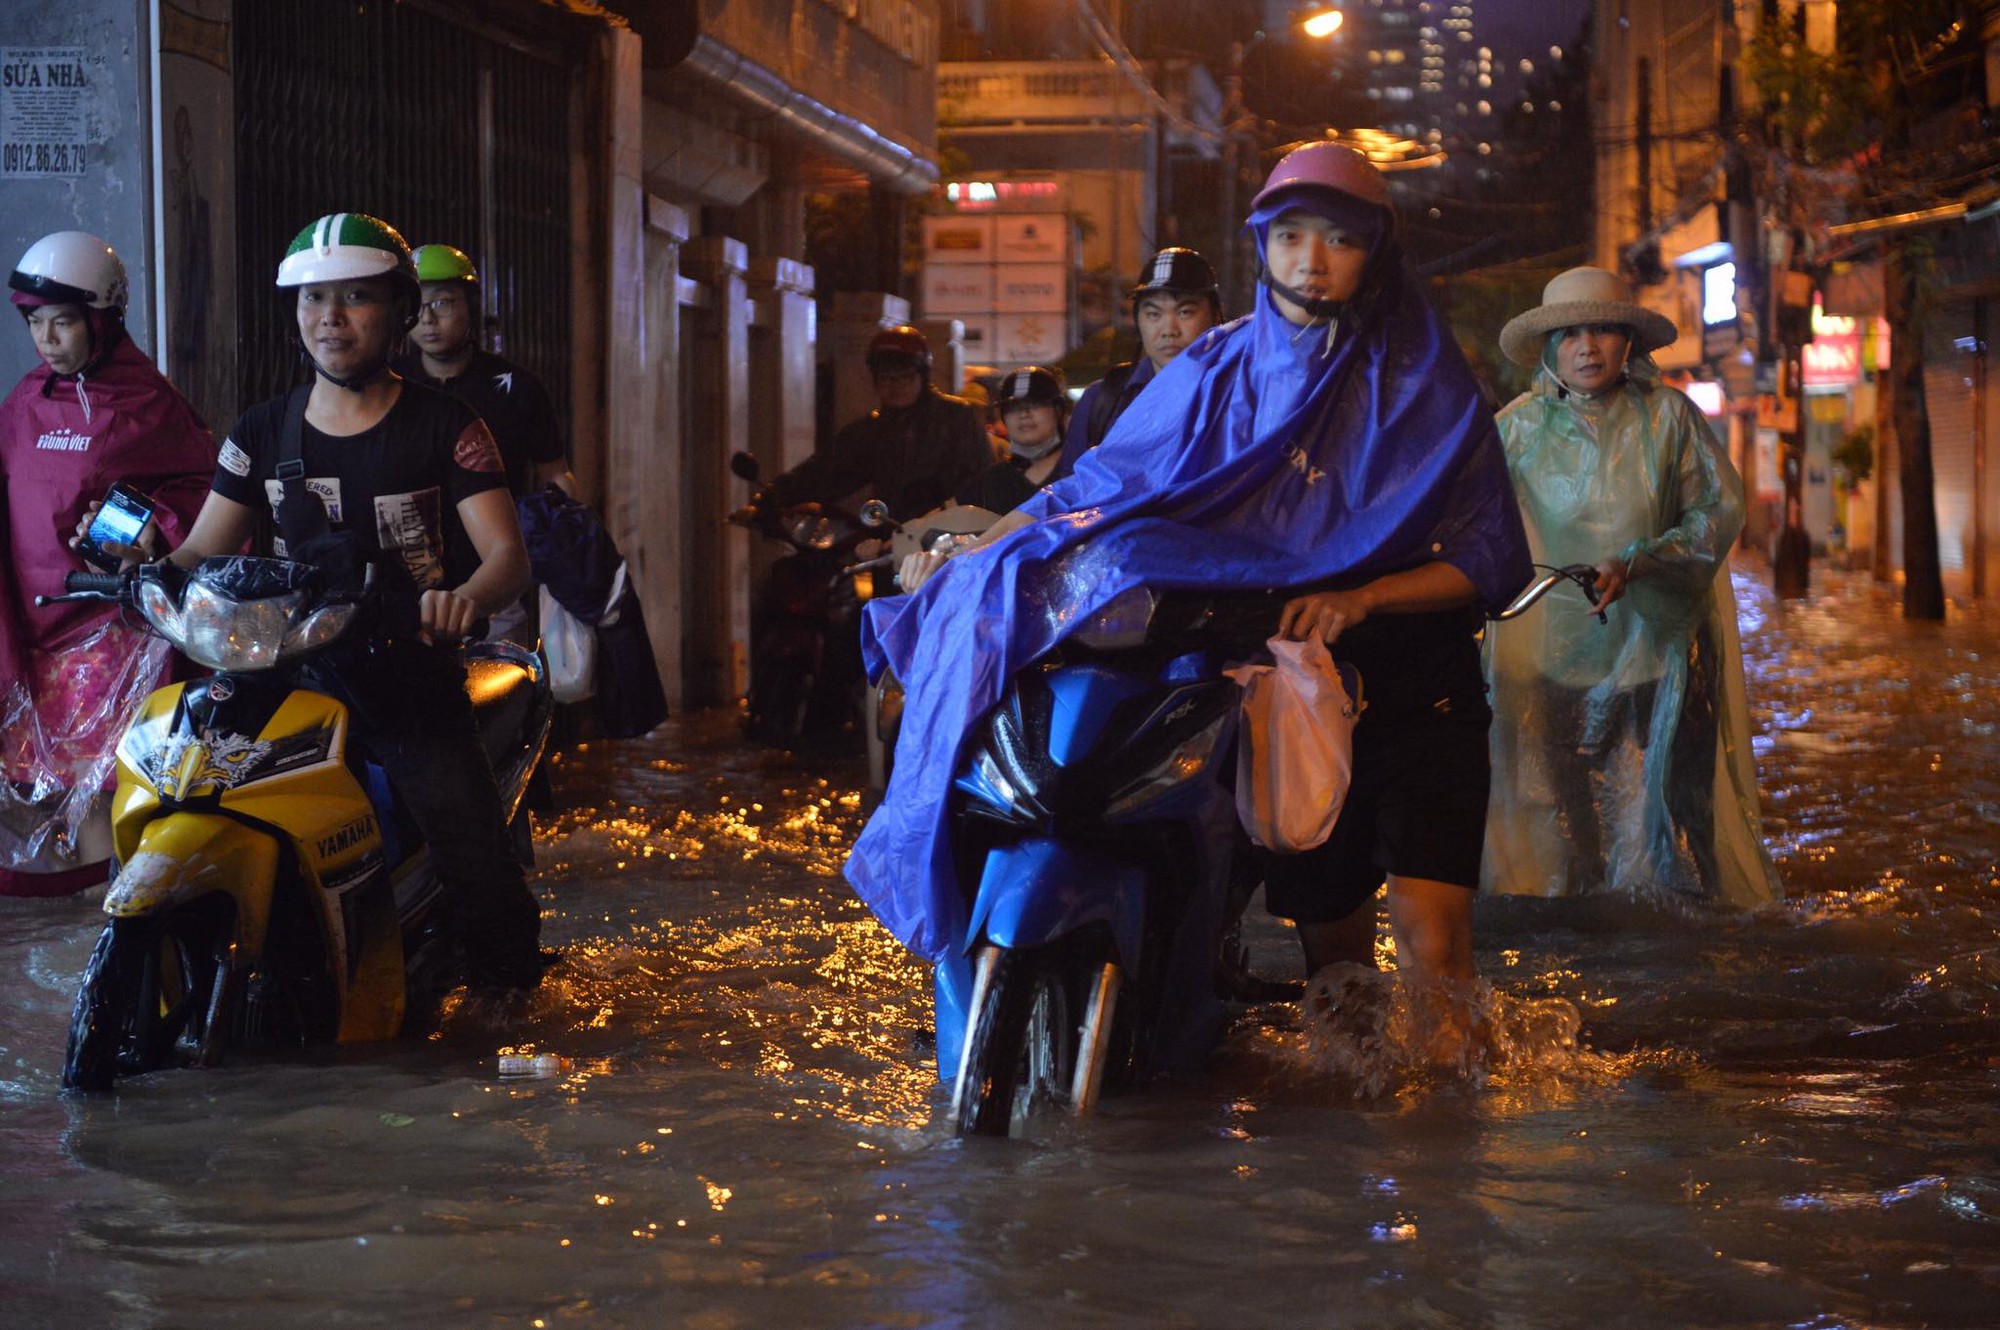 Dân công sở Hà Nội than trời trong ngày mưa ngập và tắc kinh hoàng: Có vài km mà mất tới 2, thậm chí 3 tiếng đồng hồ mới về đến nhà - Ảnh 1.